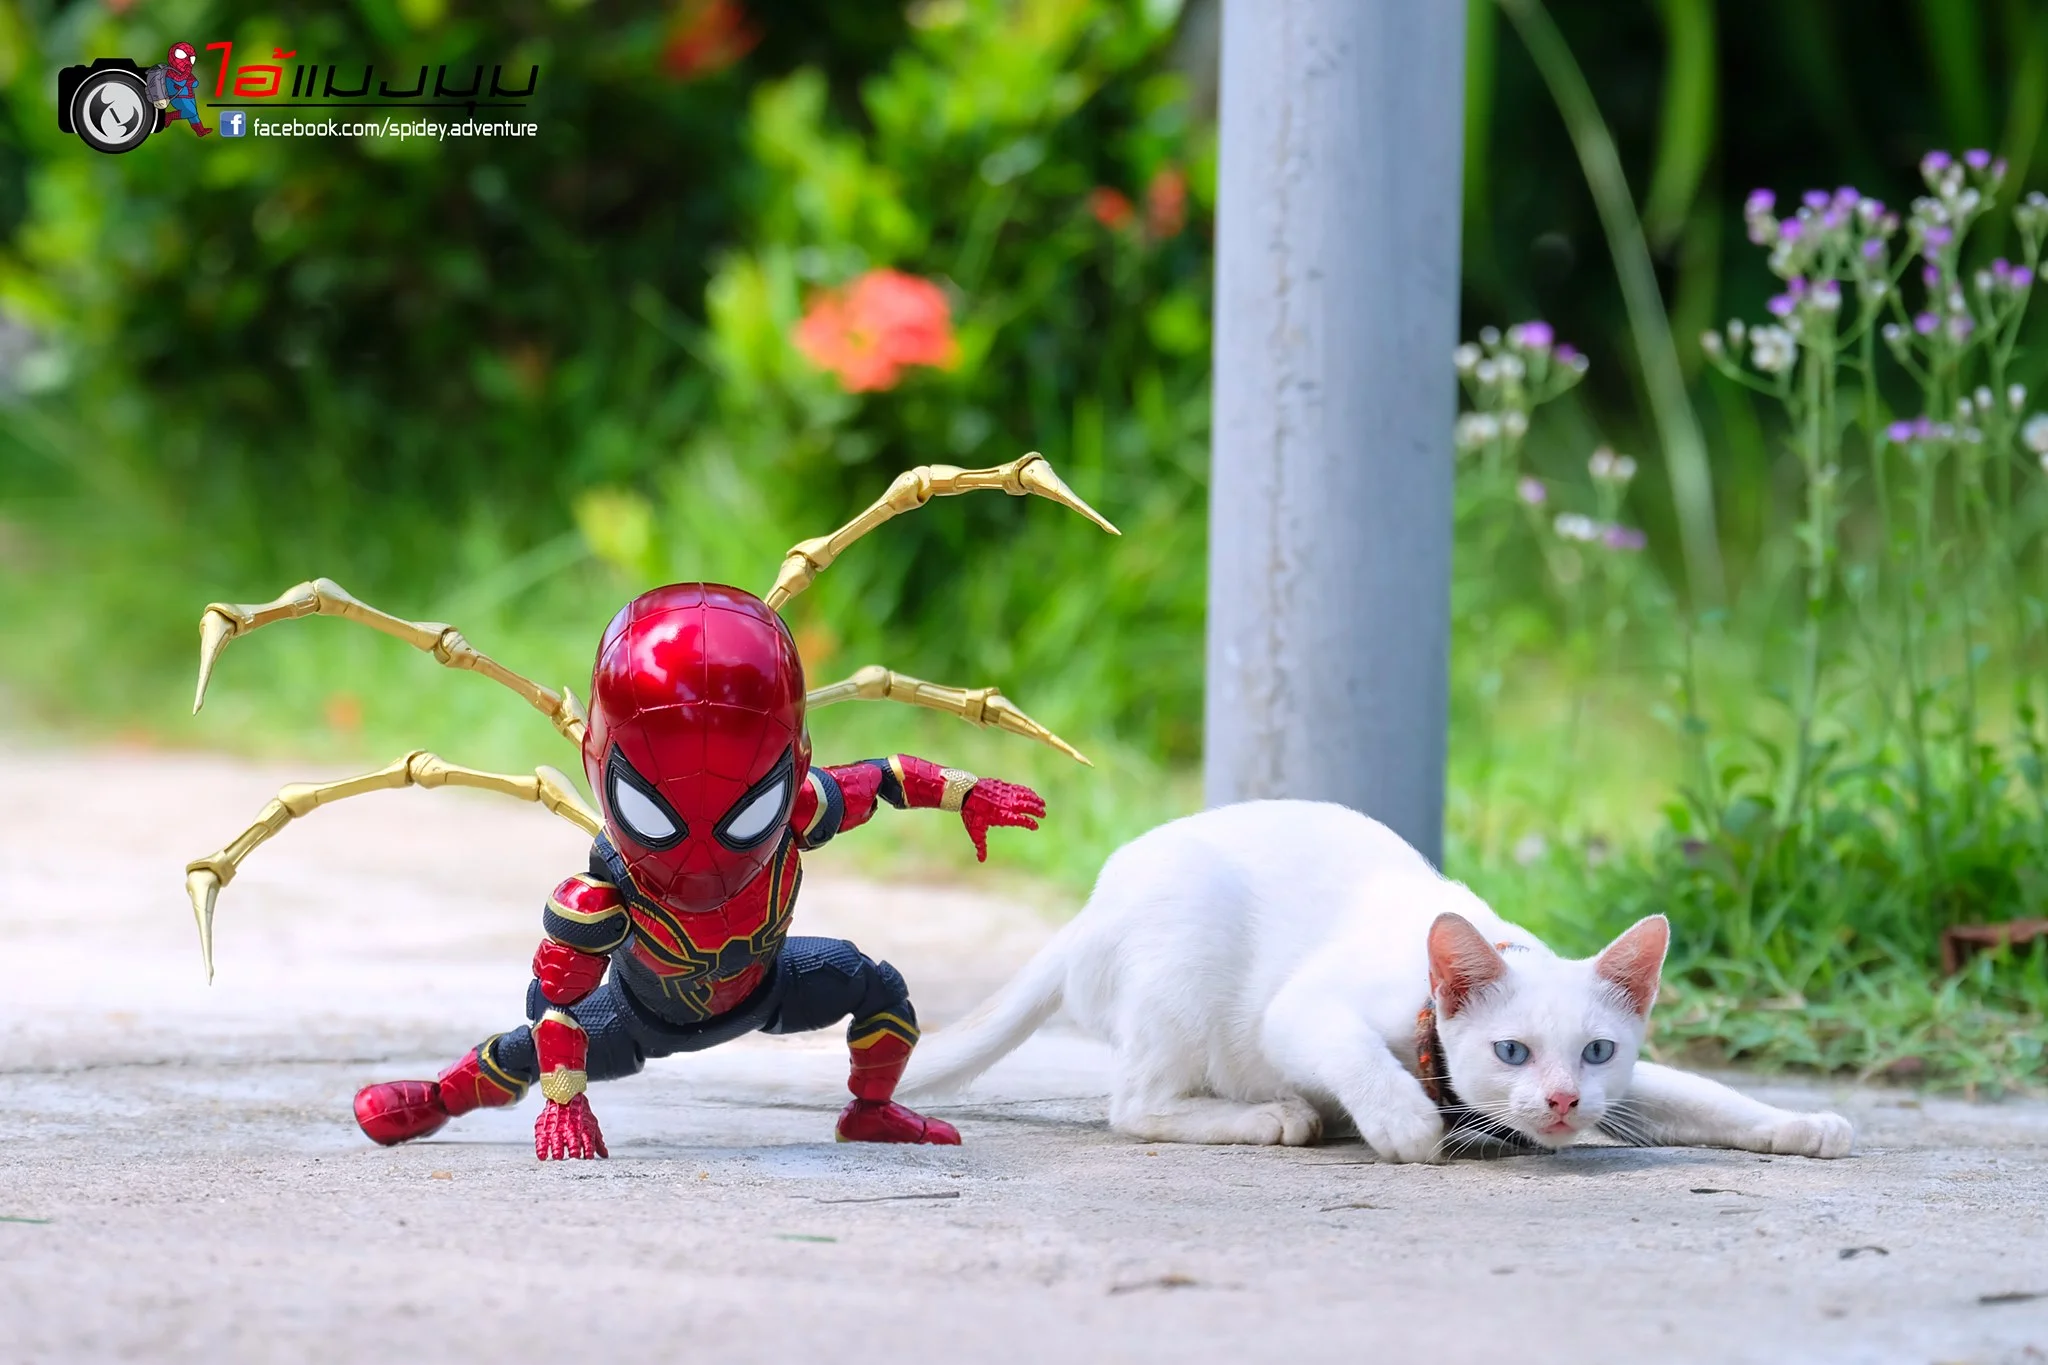 Художник додав до фото з котиками зображення Людини-павука – це виглядає дуже смішно - фото 459361